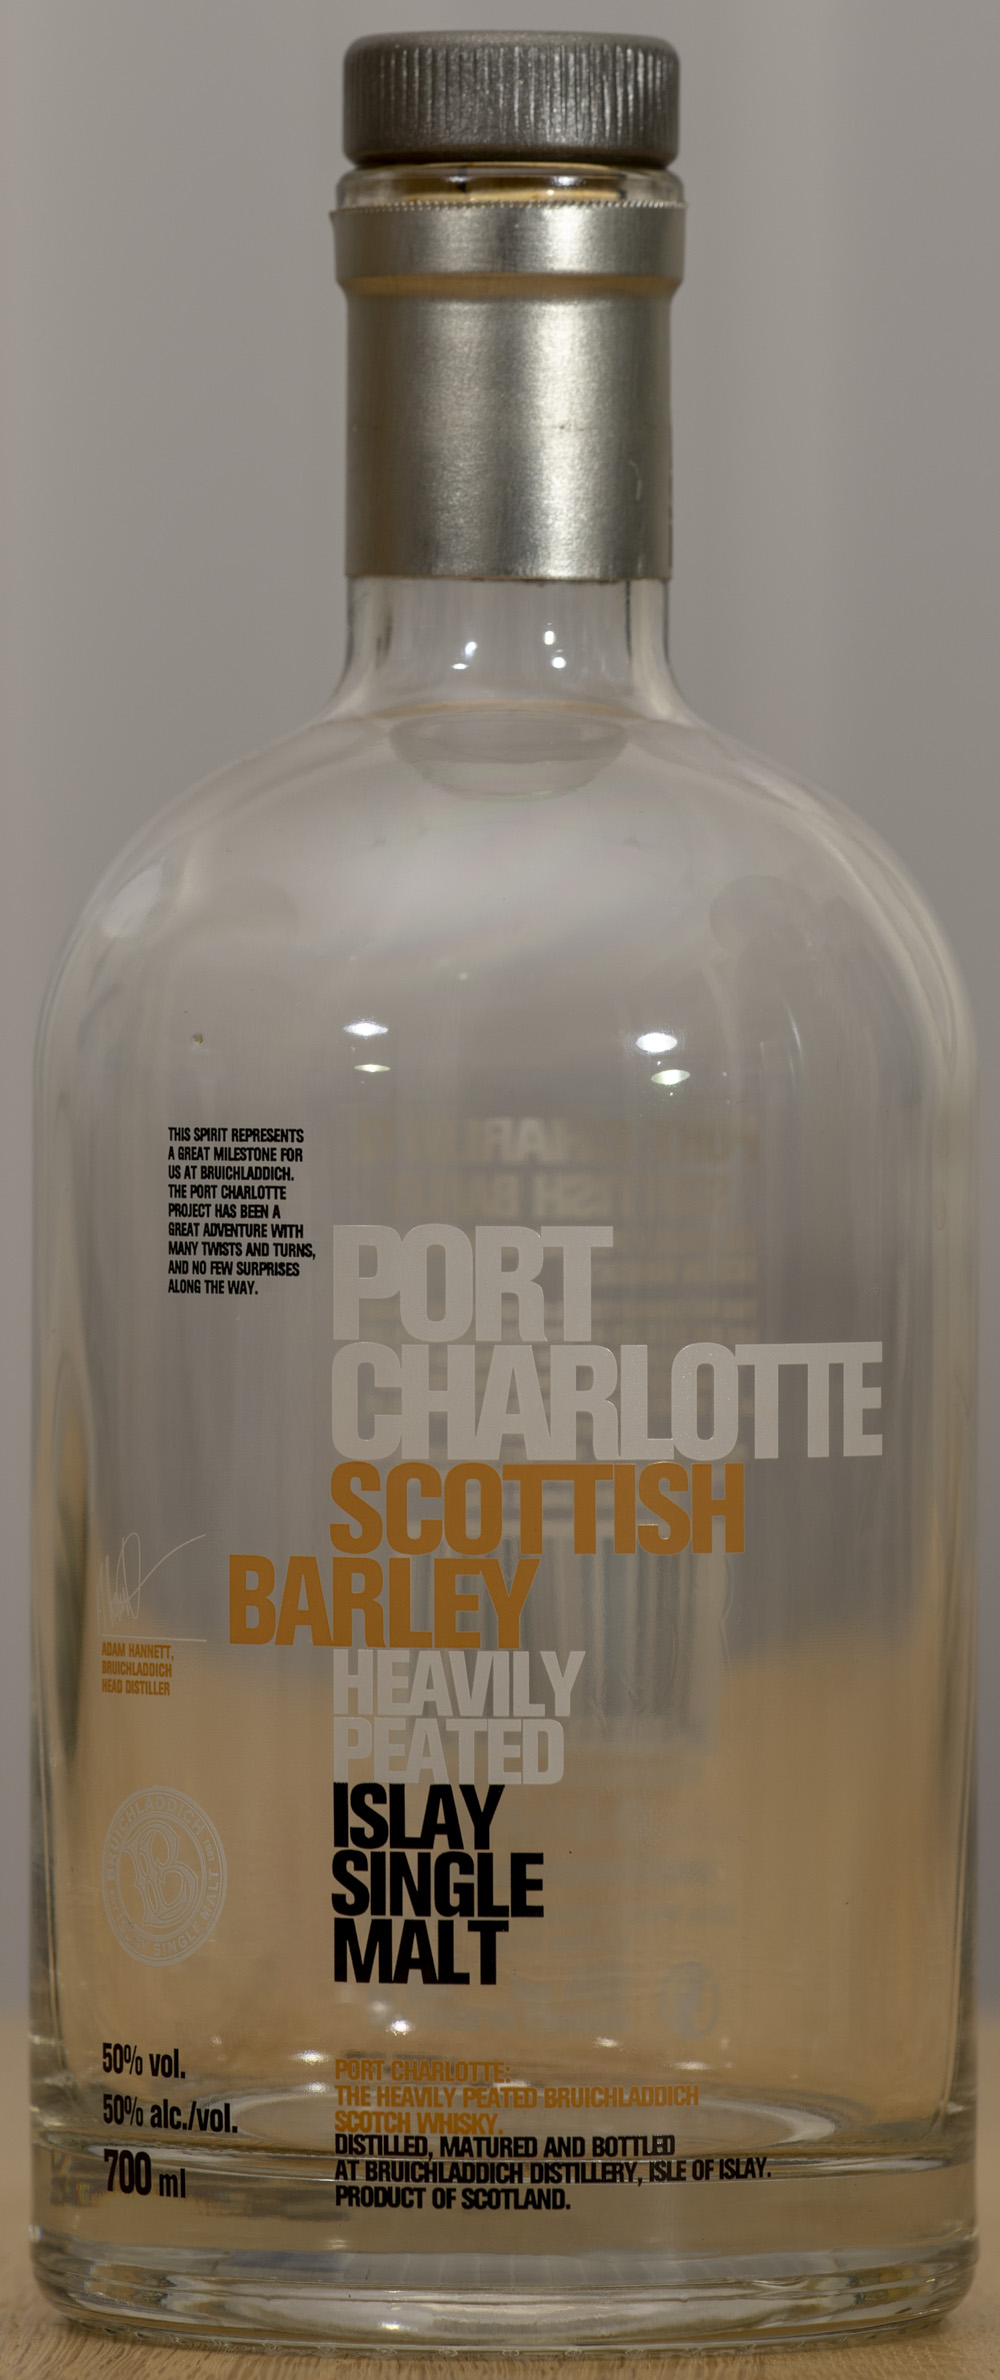 Billede: PHC_1574 - Port Charlotte Scottish Barley - bottle front.jpg